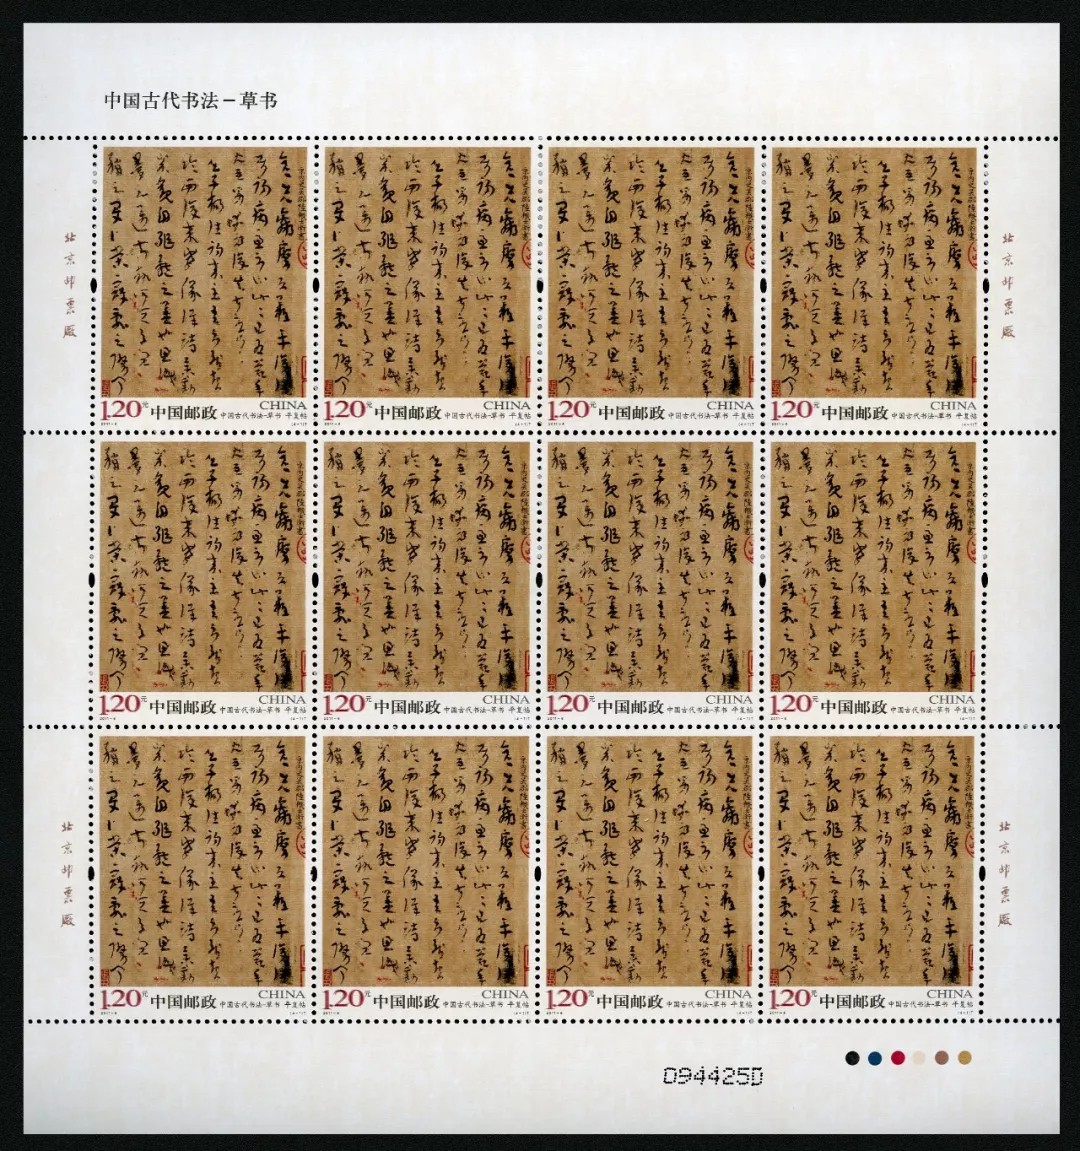 中国古代书法草书特种邮票最能表现中国书法艺术之美者